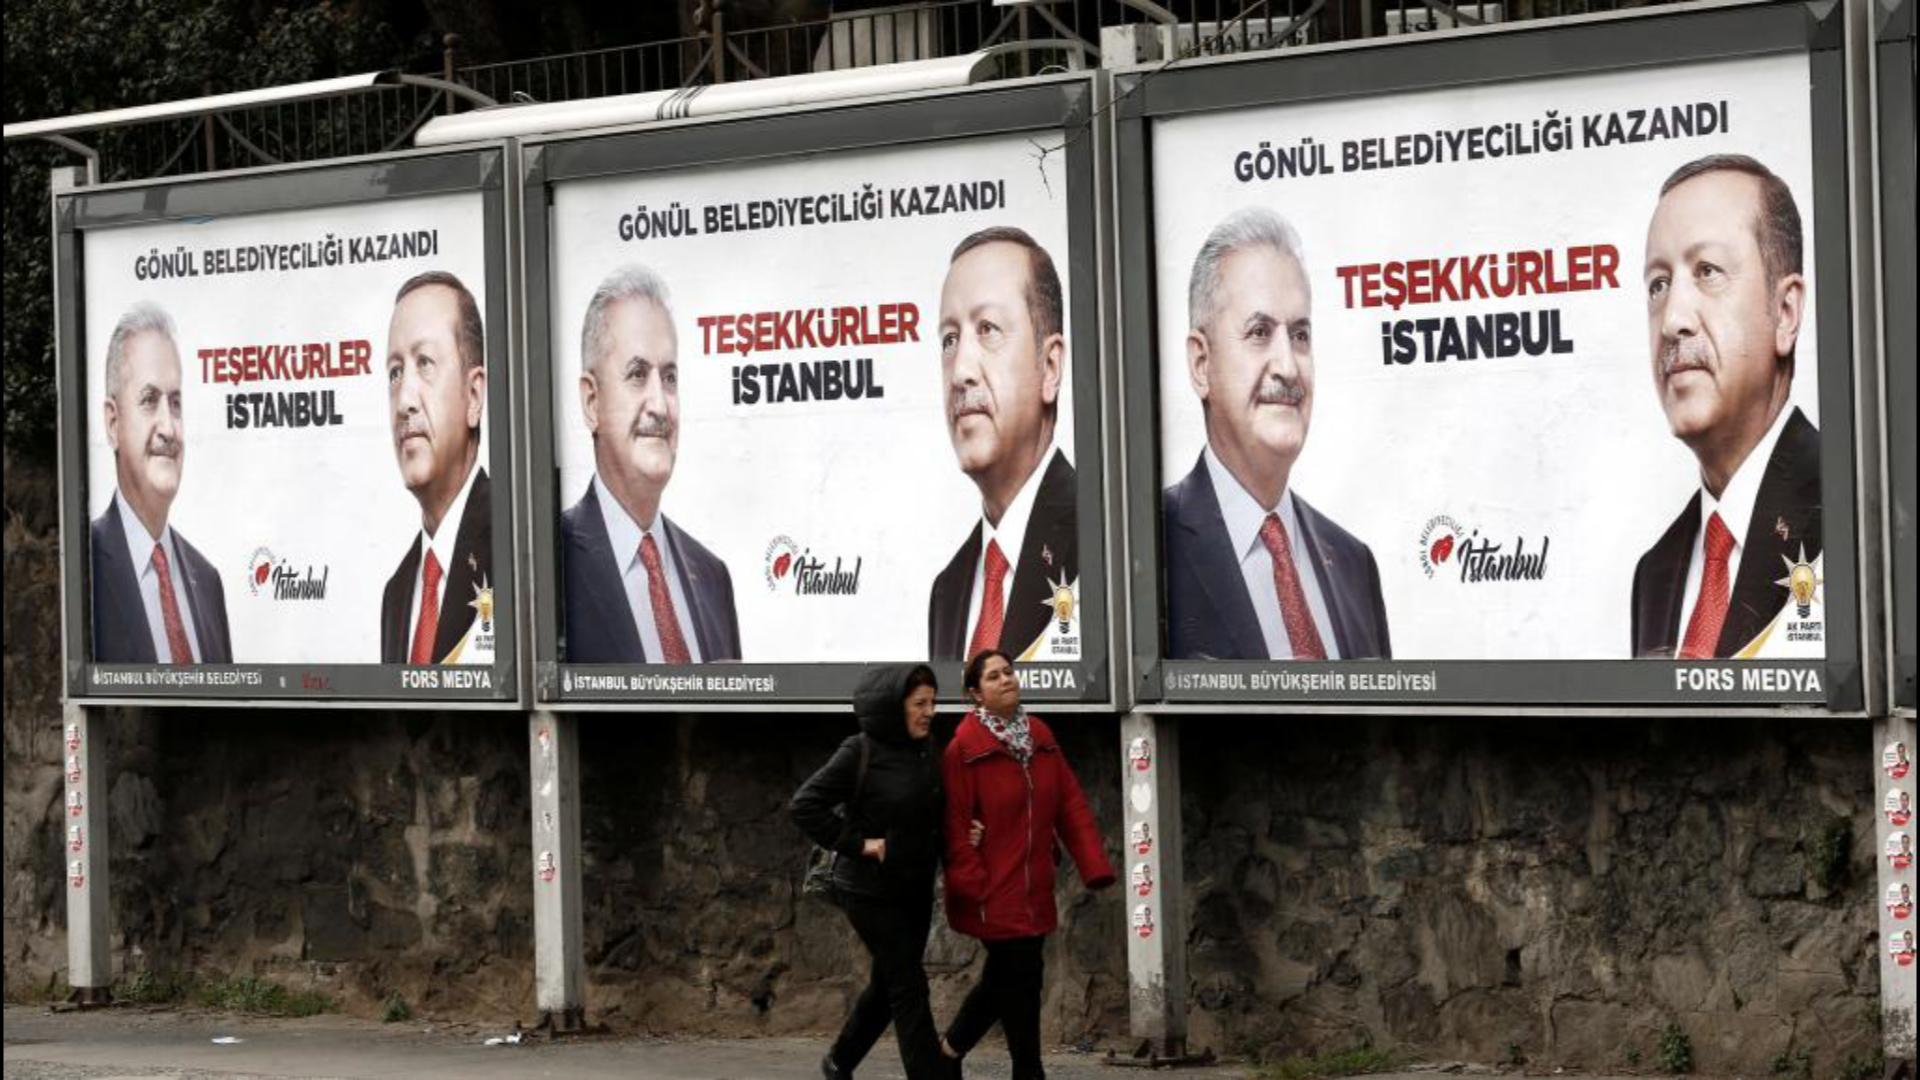 Հետընտրական կրքեր Թուրքիայում